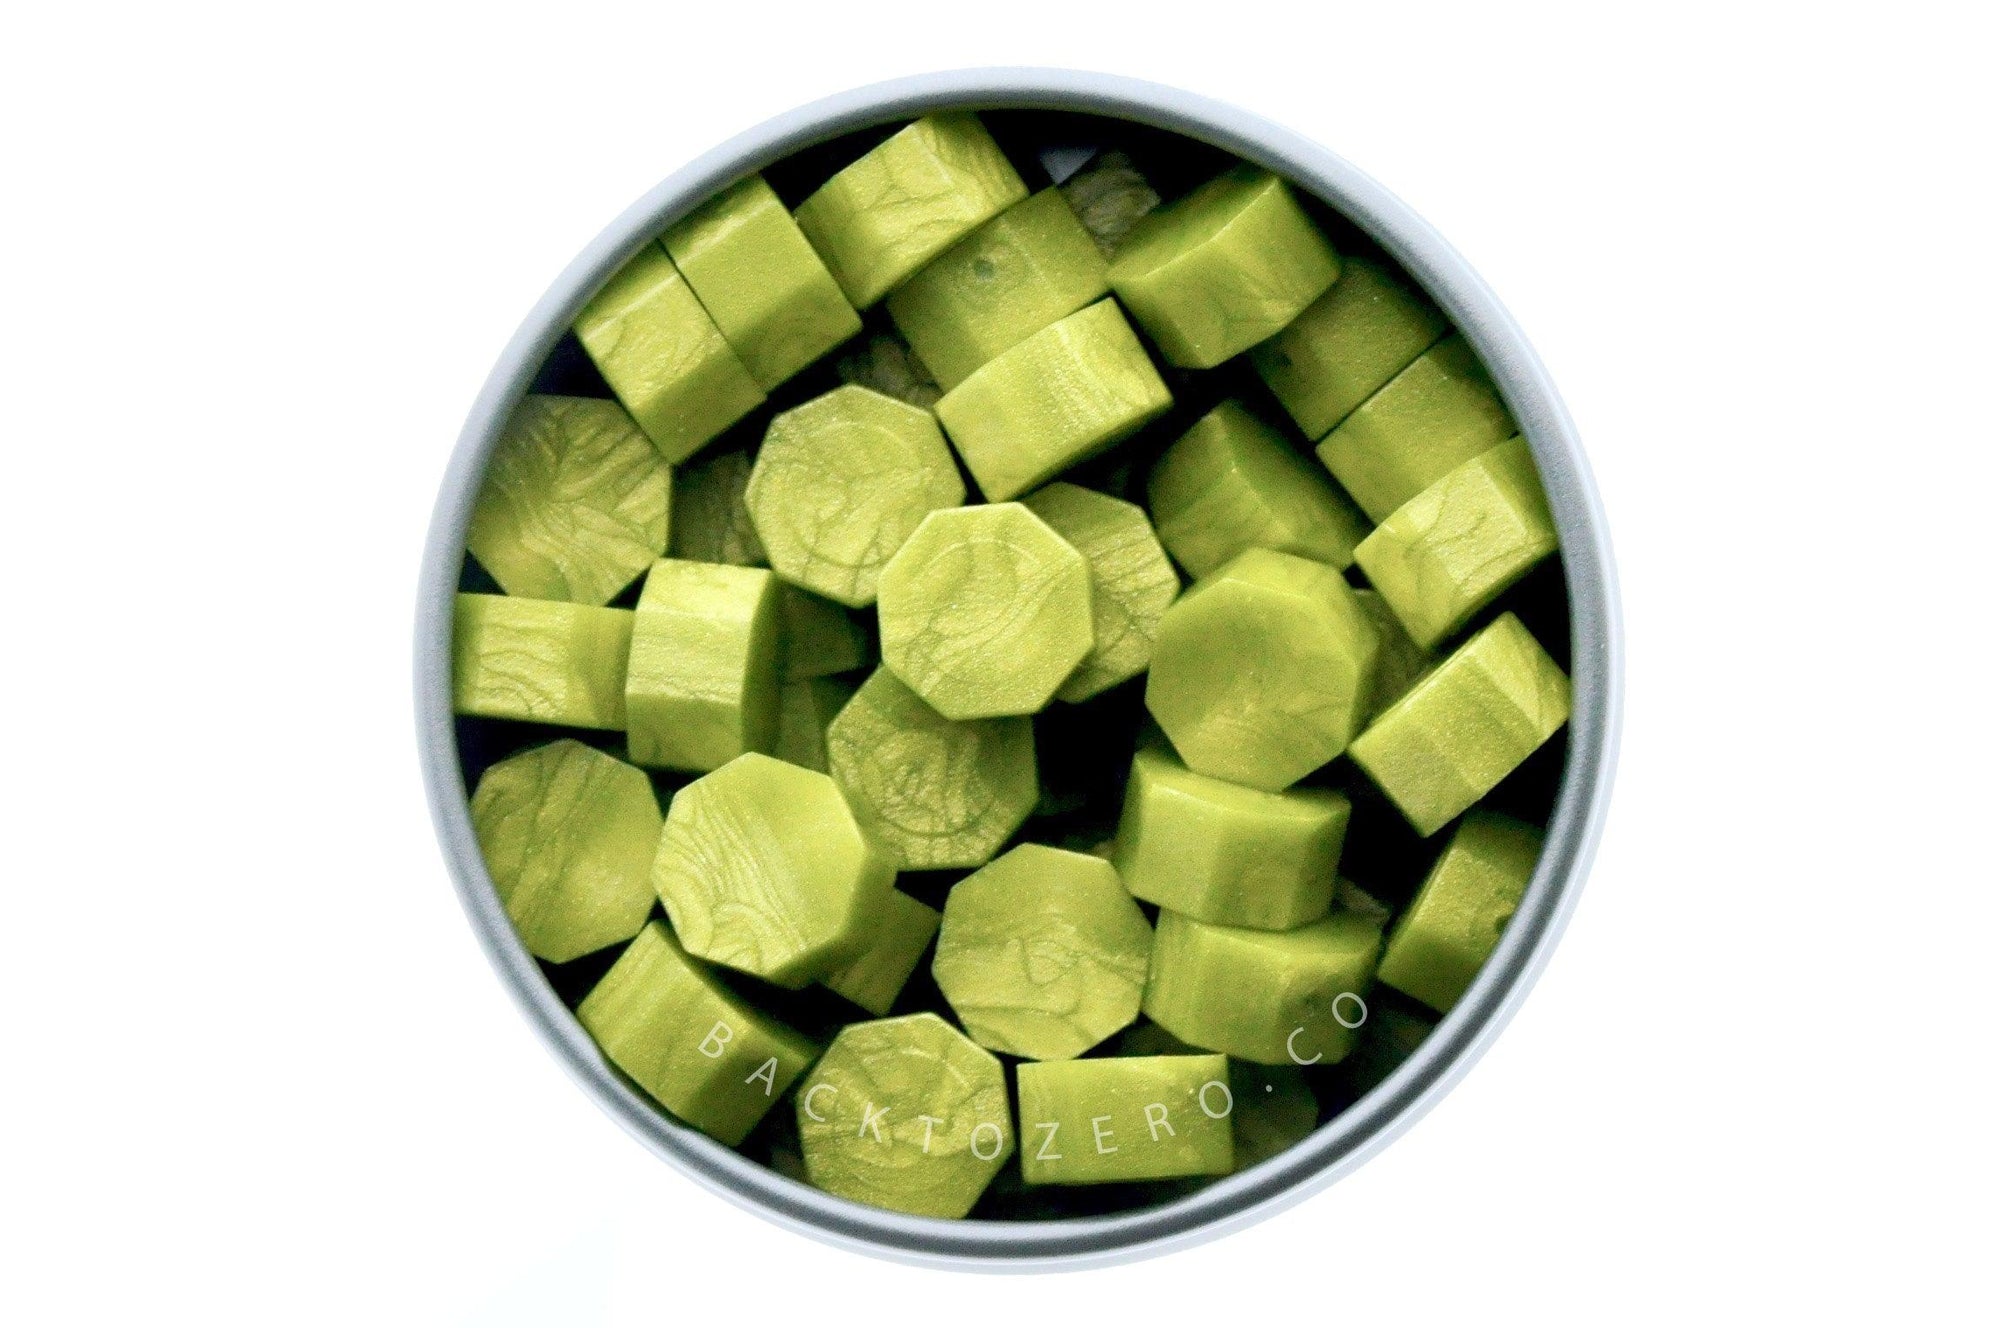 Matcha Octagon Sealing Wax Beads - Backtozero B20 - green, matcha, octagon bead, sealing wax, tin, Wax Beads